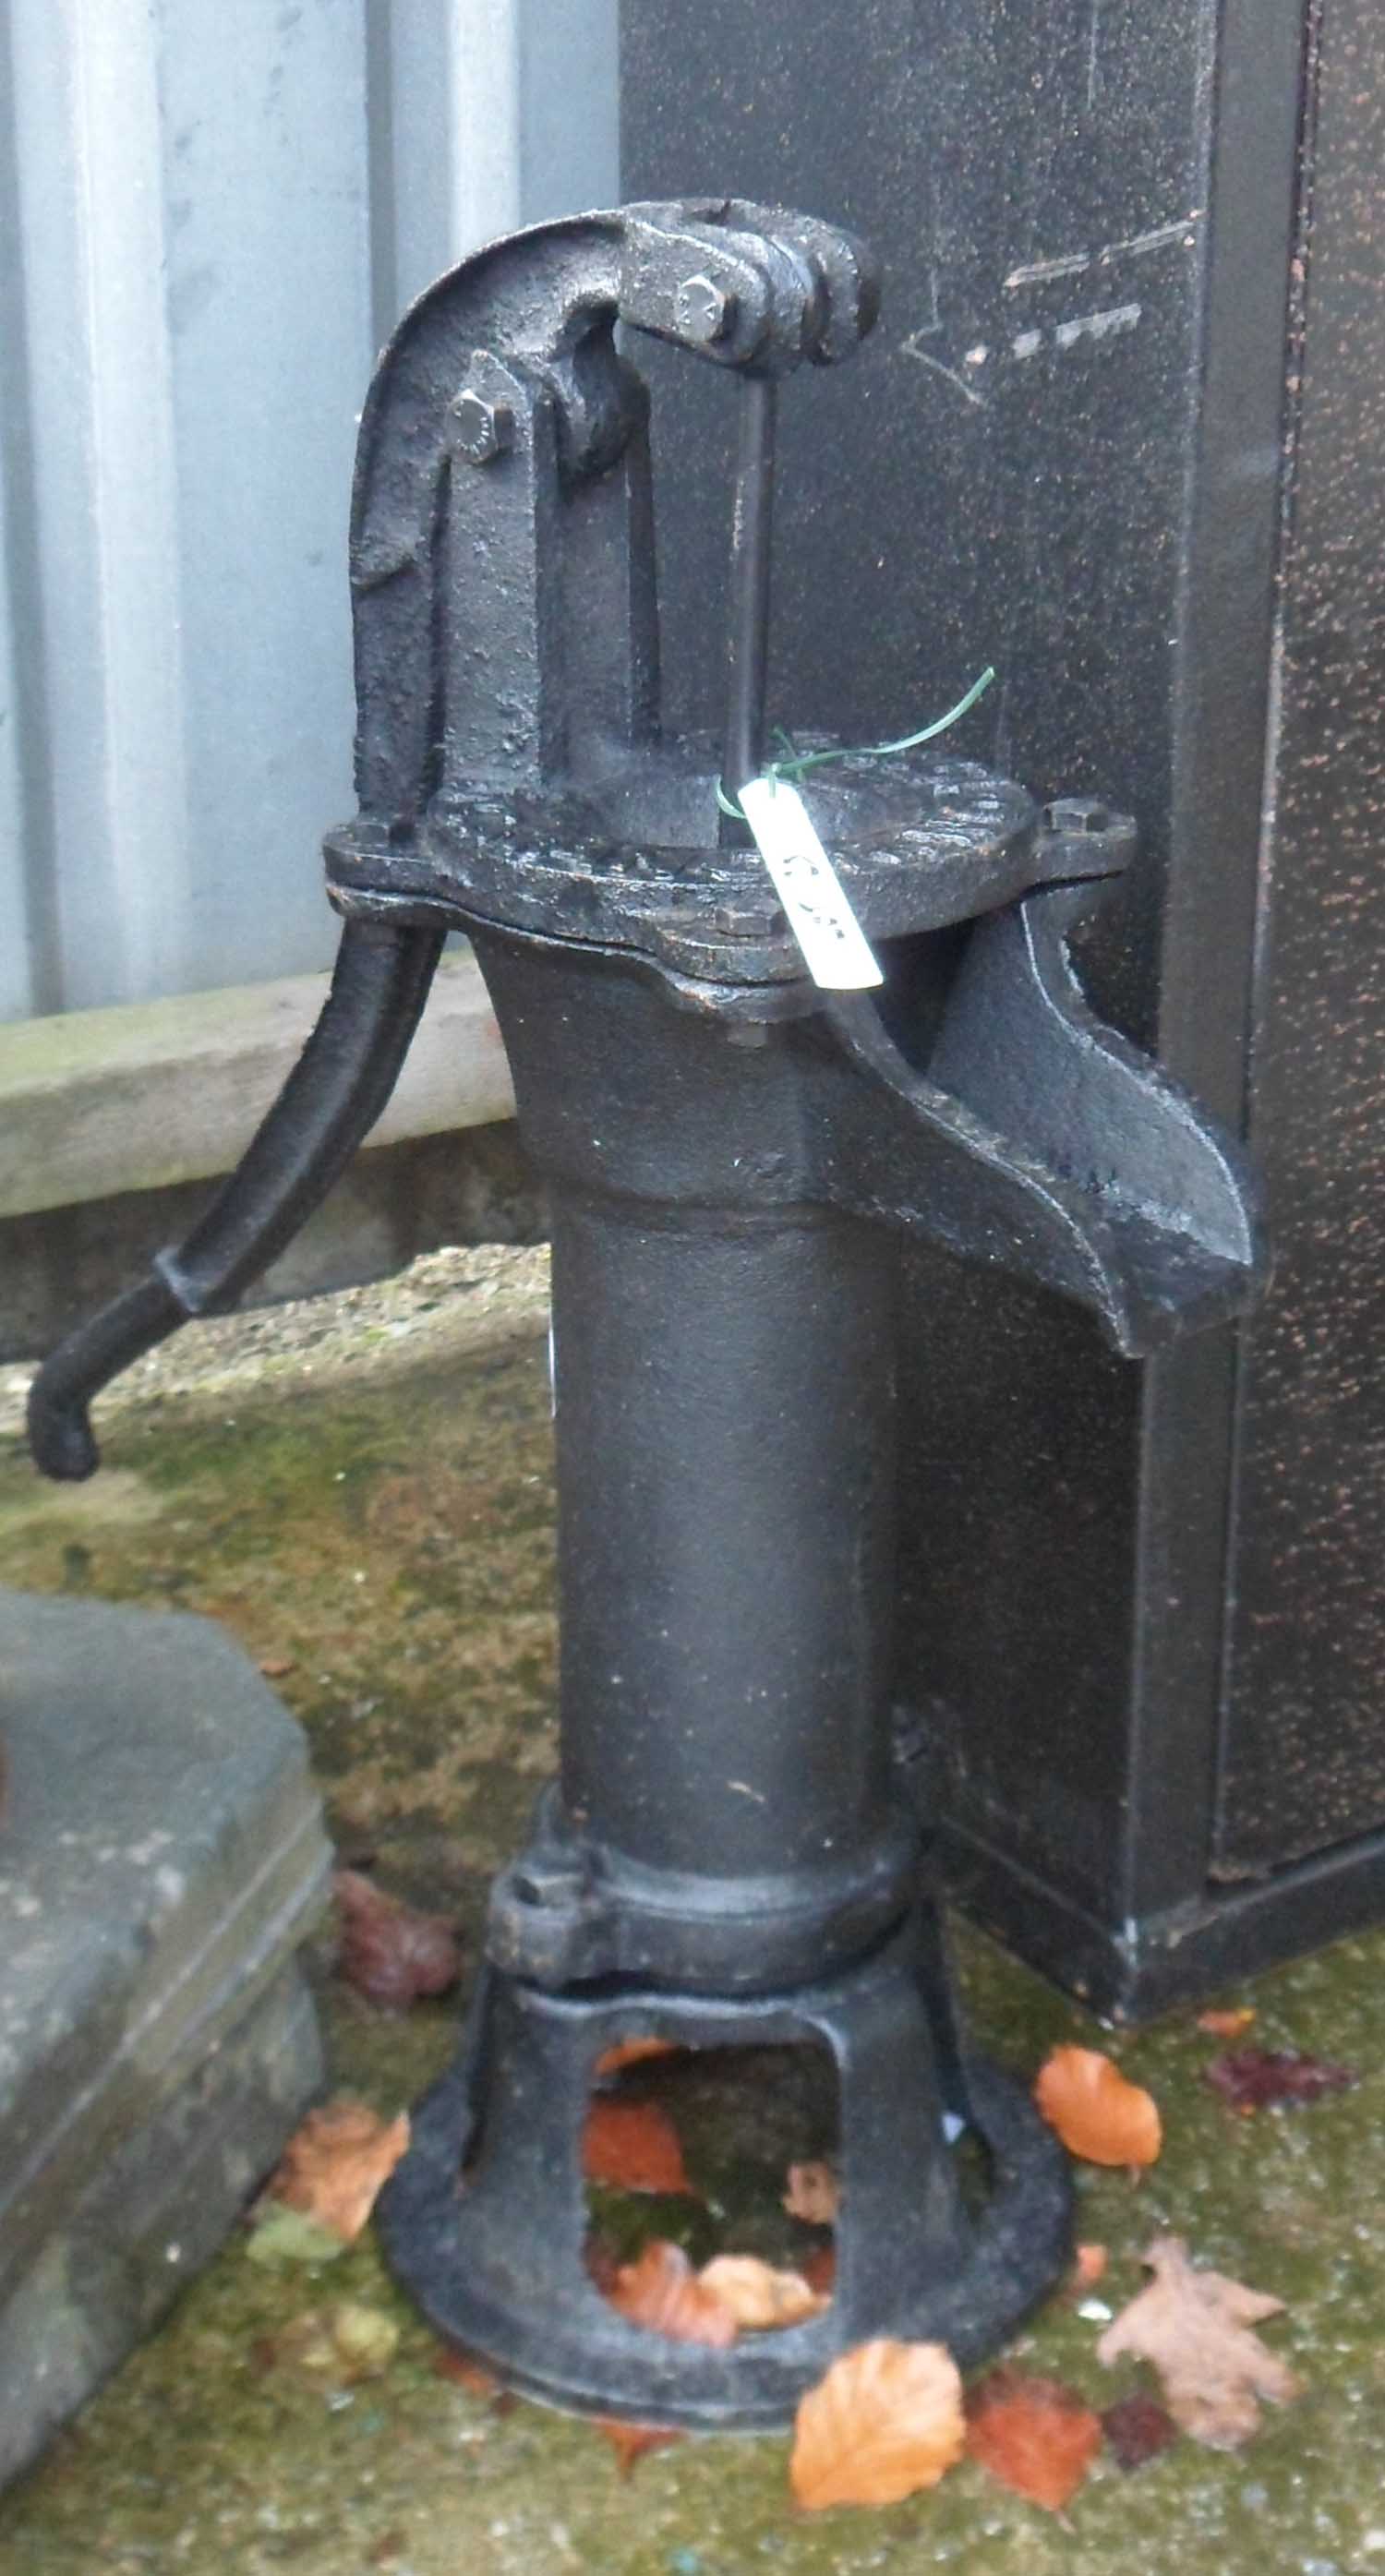 A reproduction cast iron garden pump